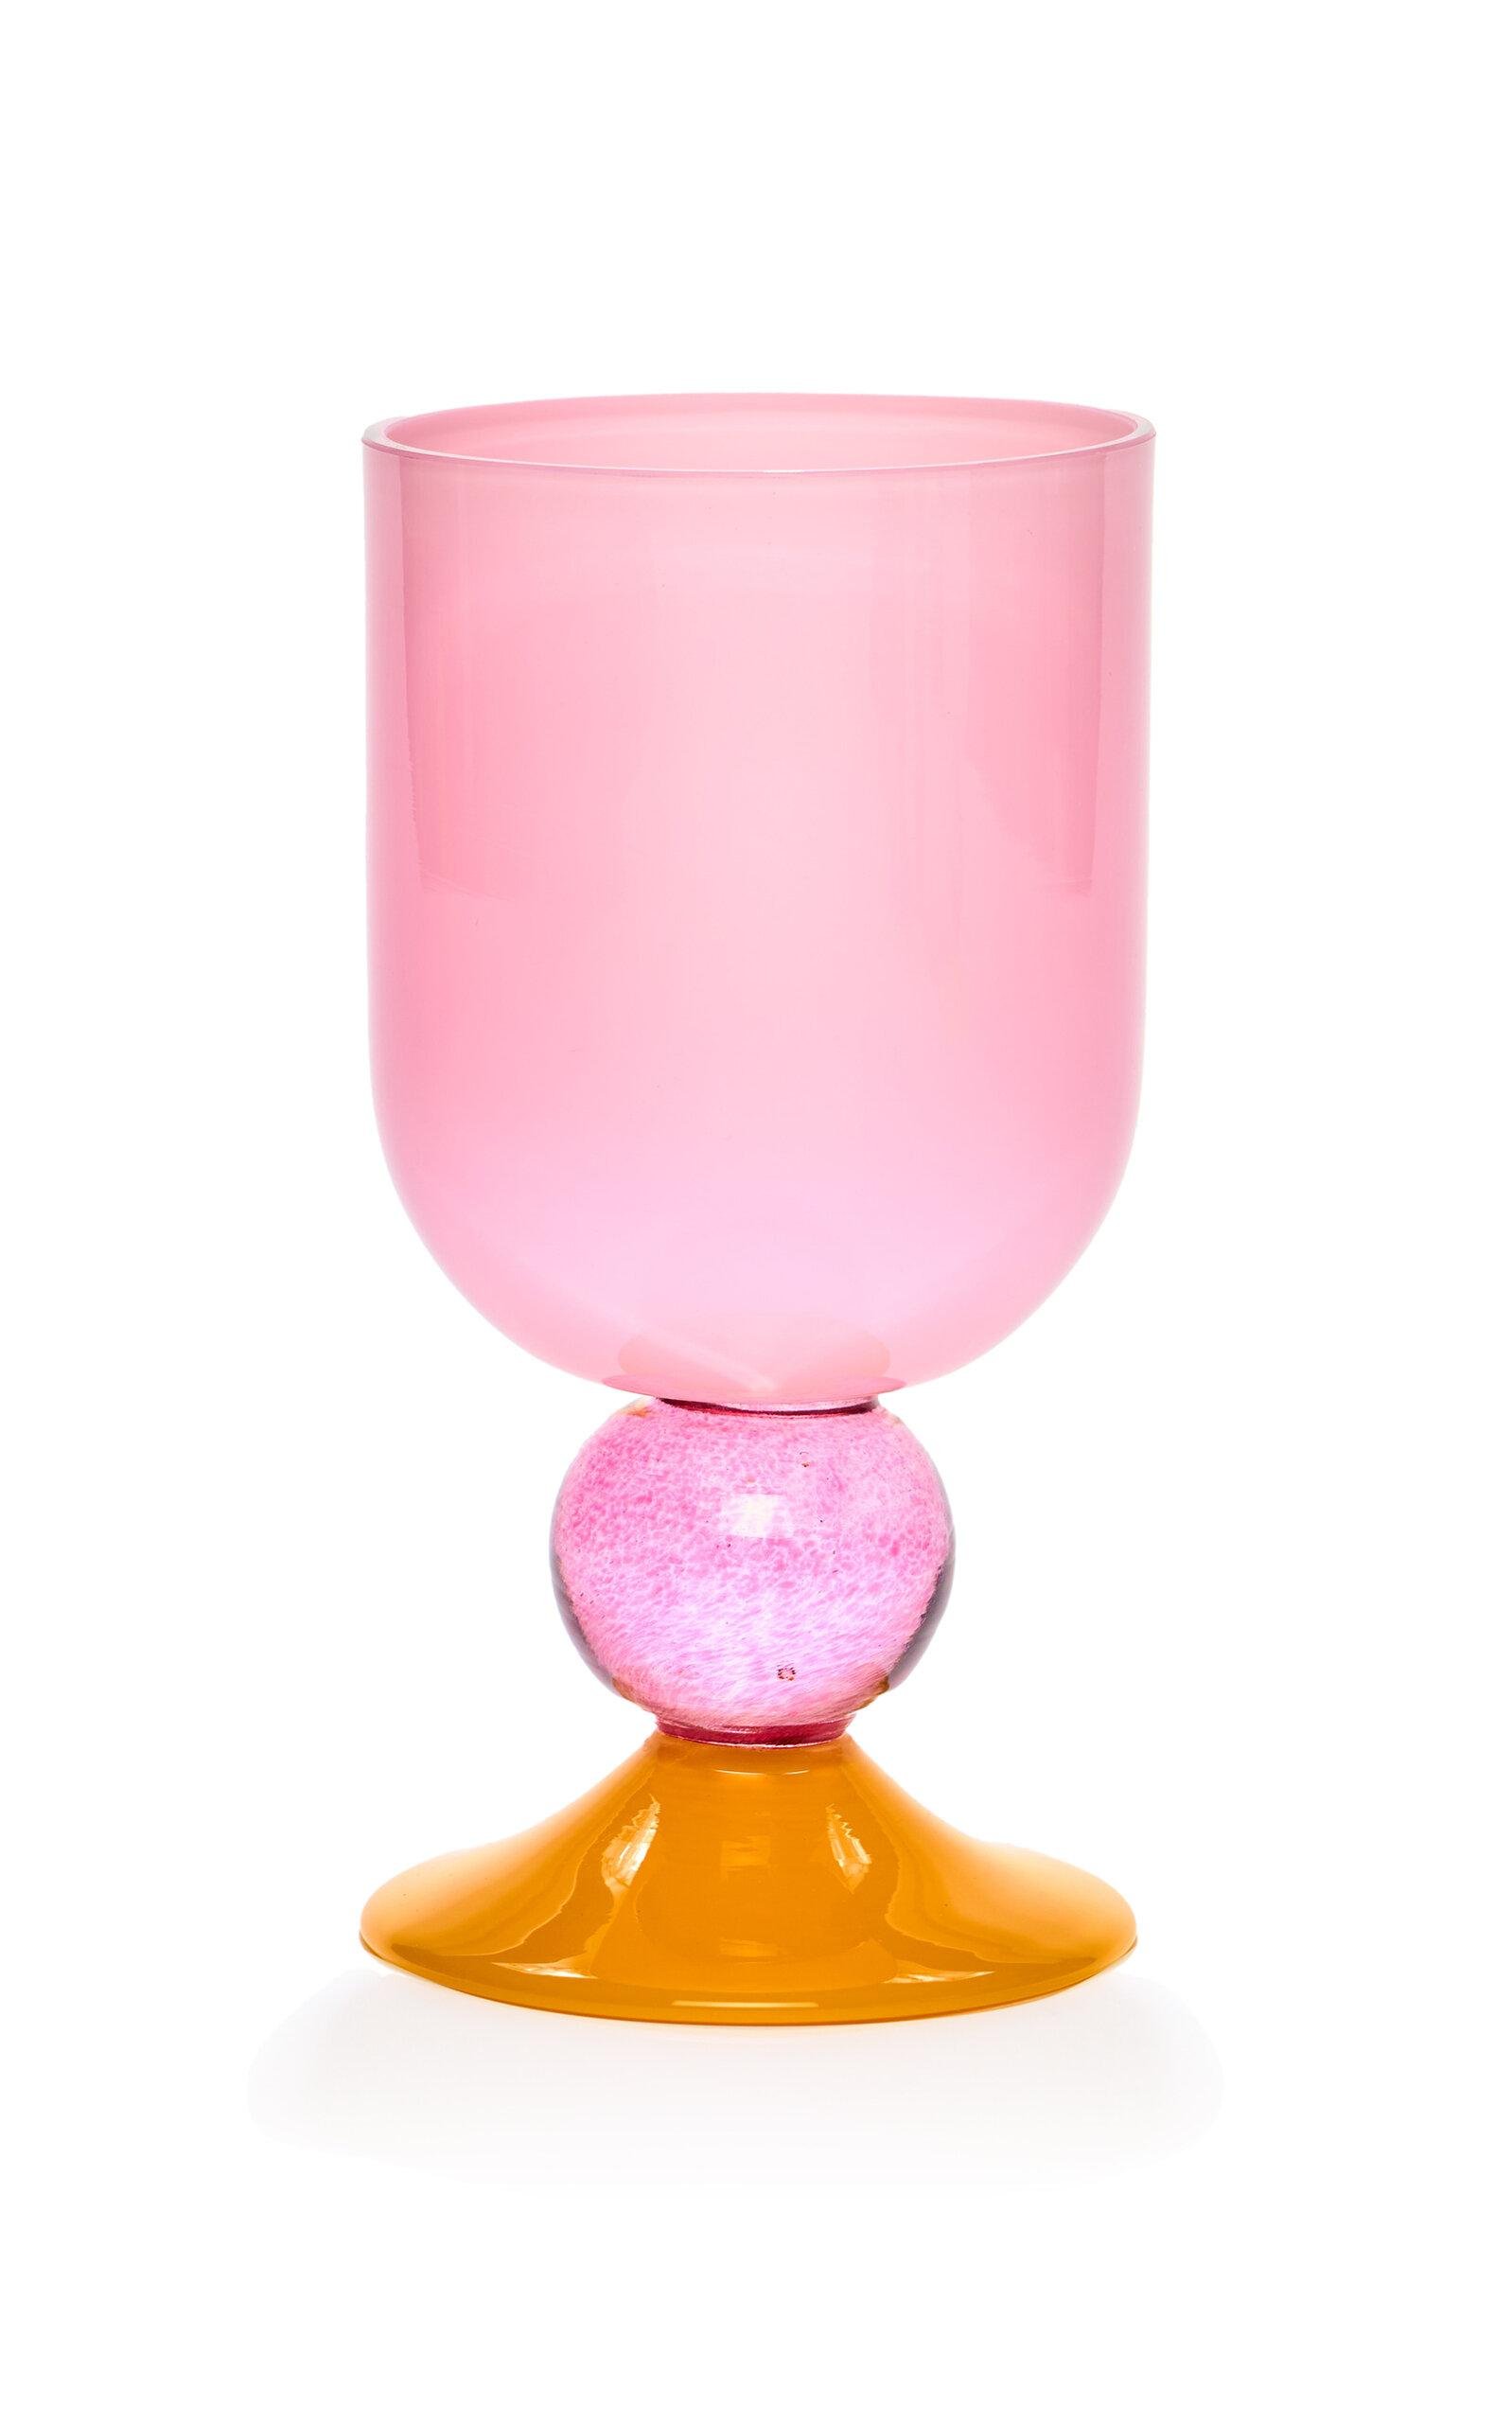 Gather - Miami Sweetie Glass - Pink - Moda Operandi by GATHER